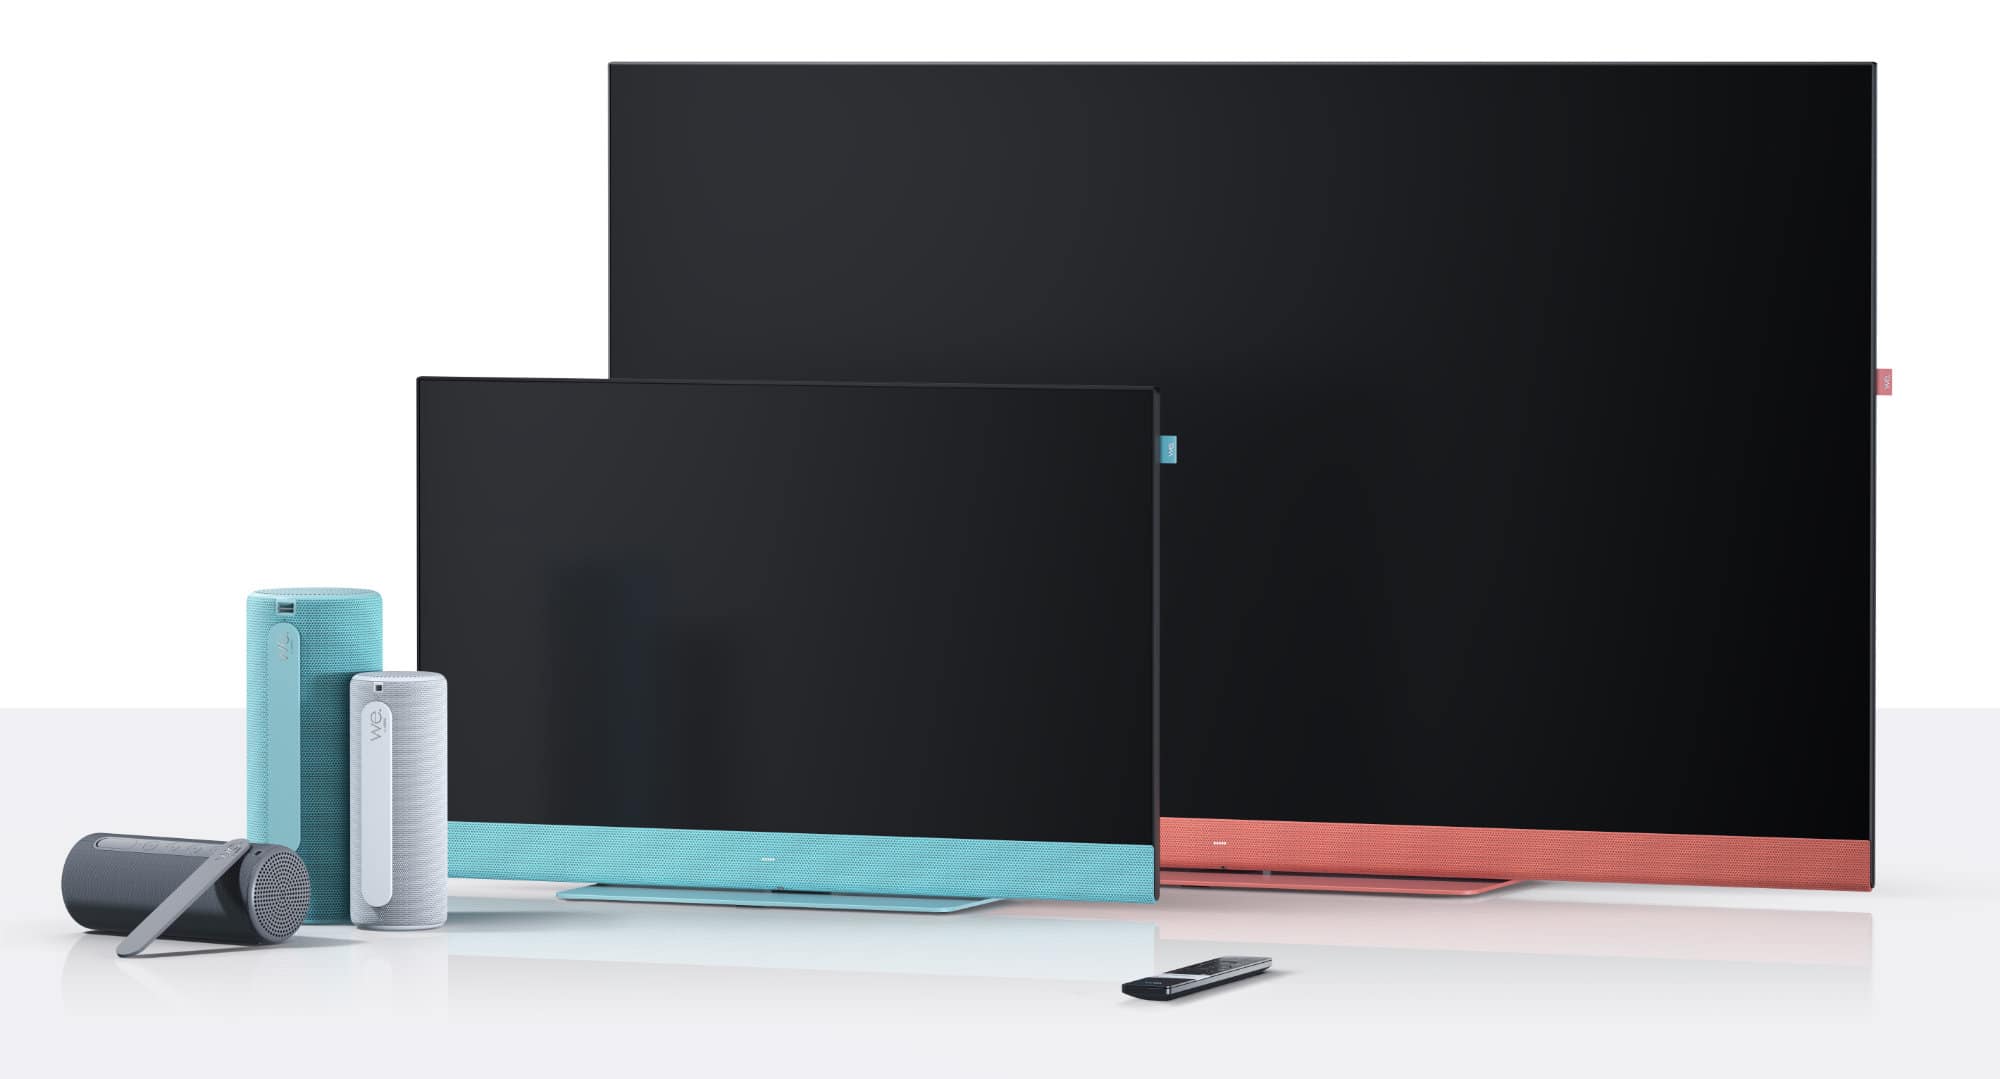 We. by Loewe bringt neue 4K-TVs Filme 4K Bluetooth-Lautsprecher und 